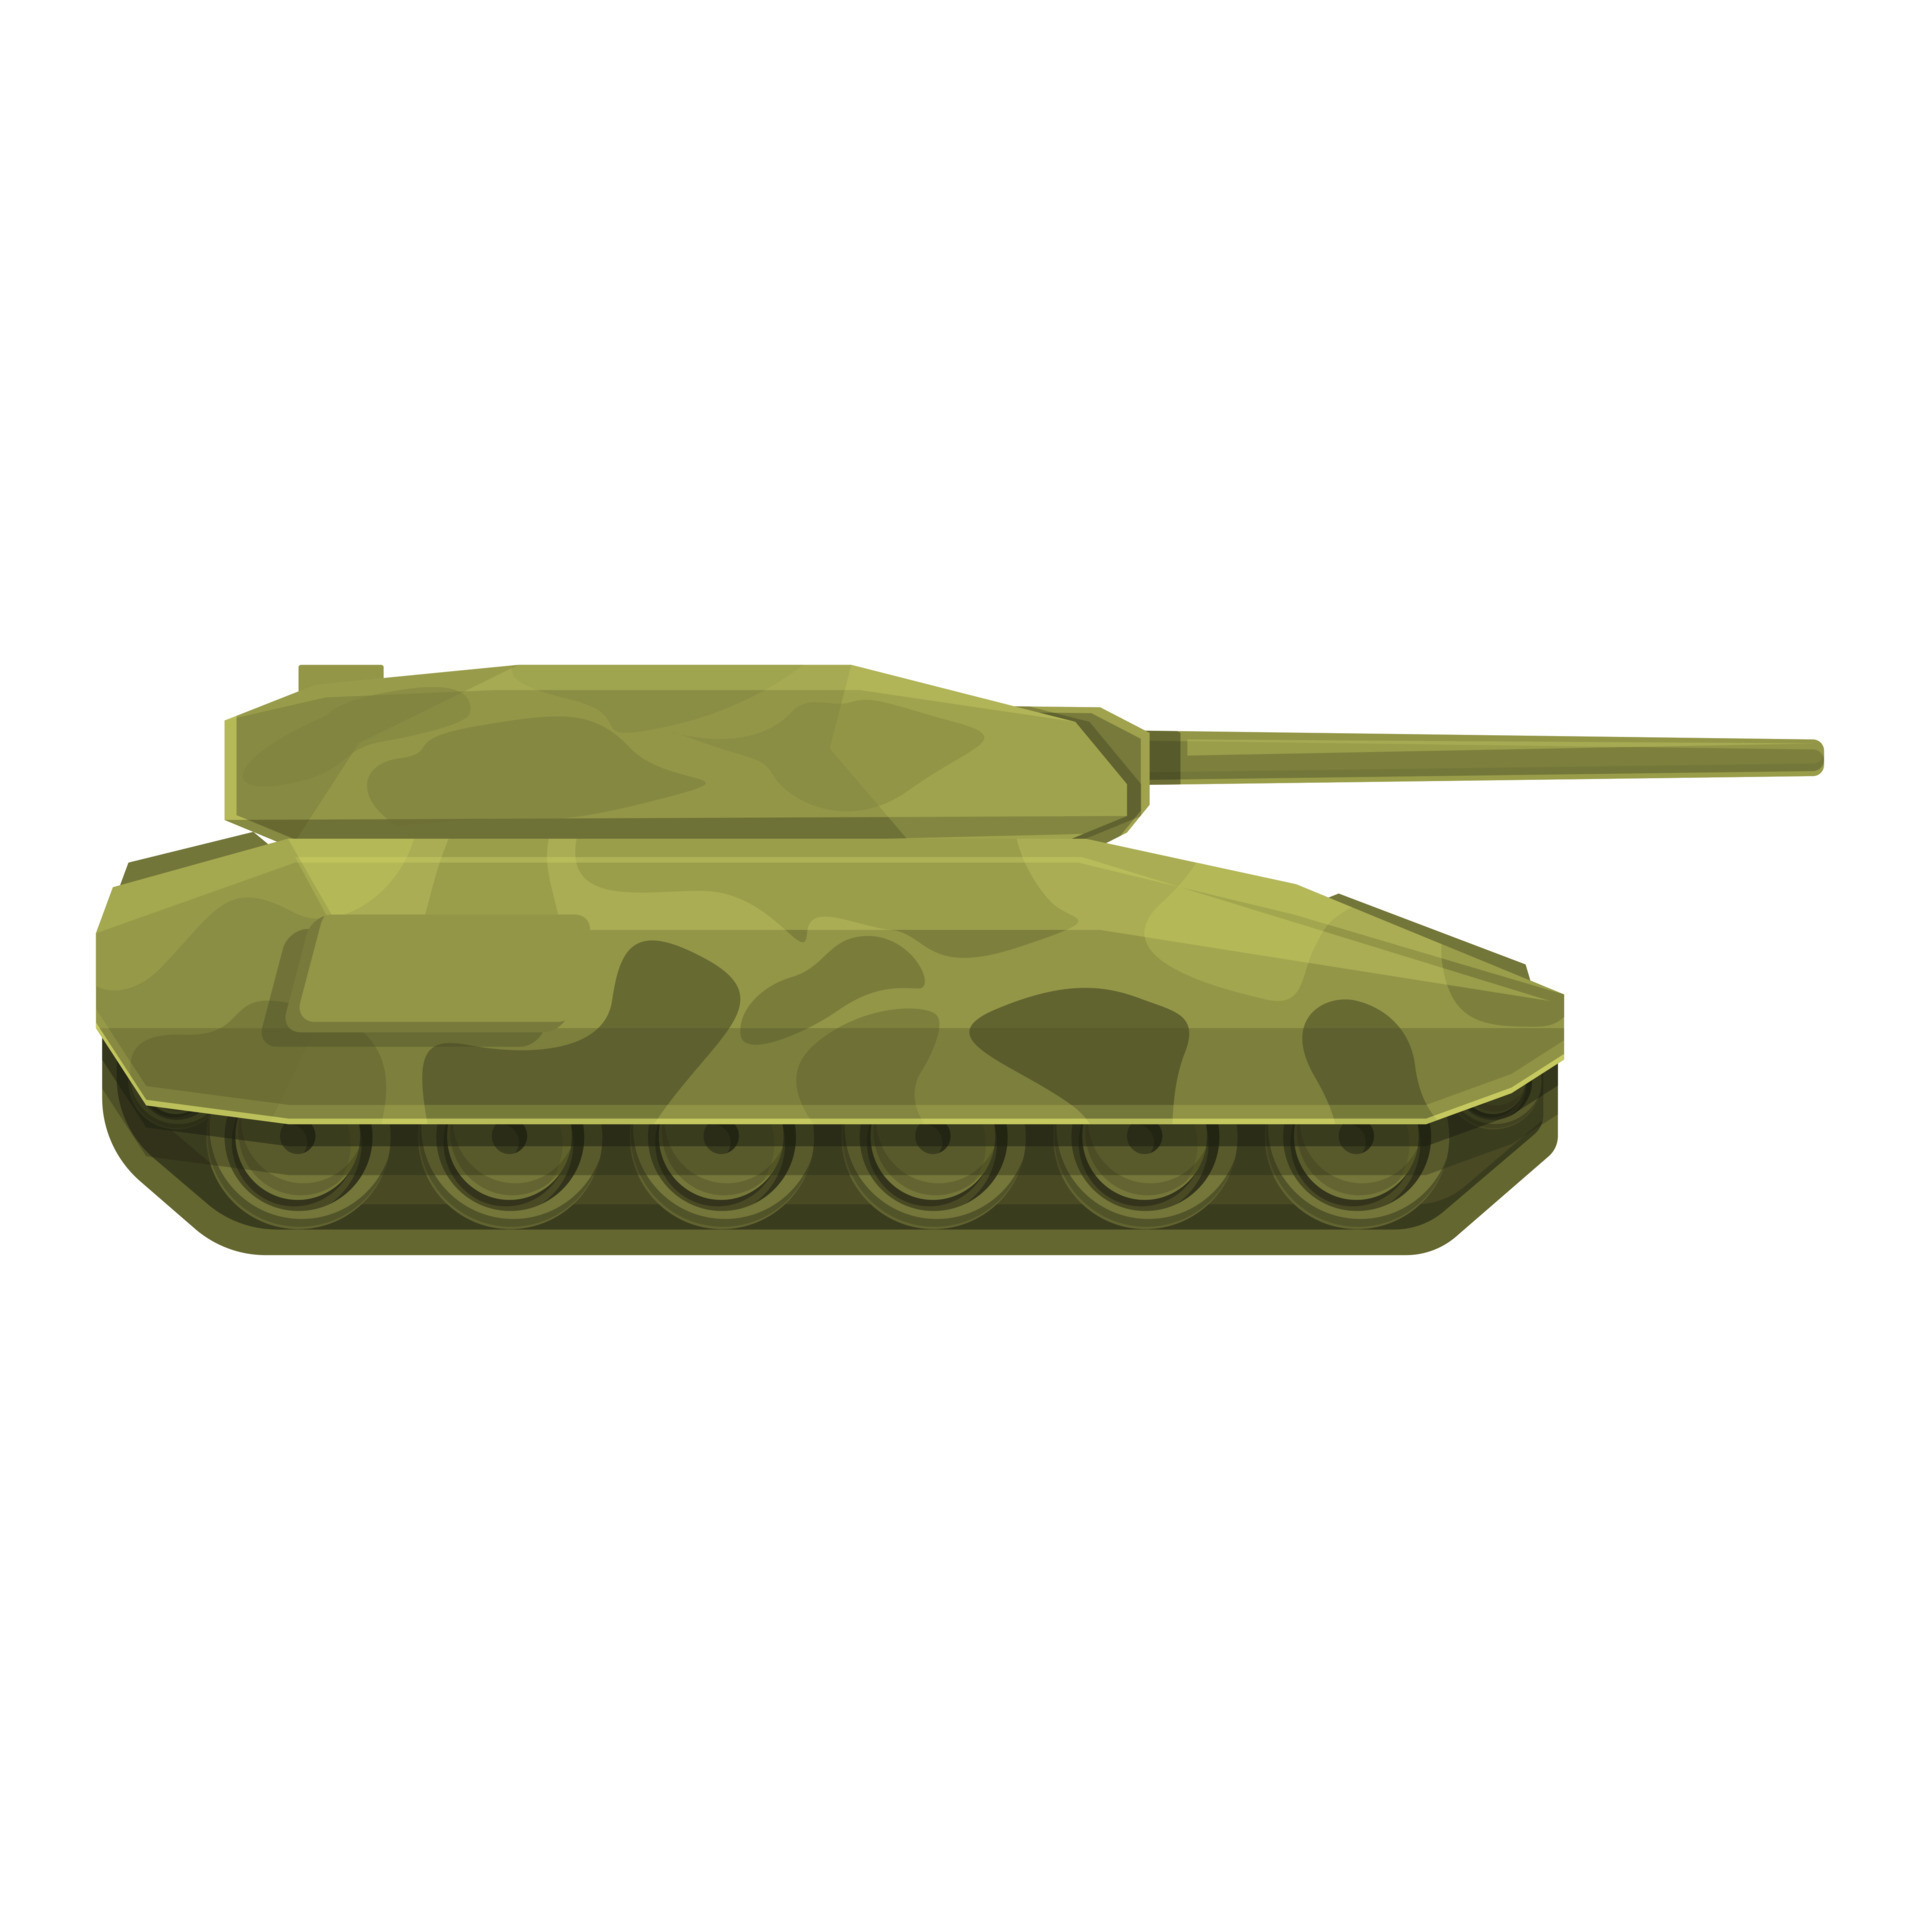 Tank design icon cartoon vector. Military army 14349297 Vector Art at  Vecteezy